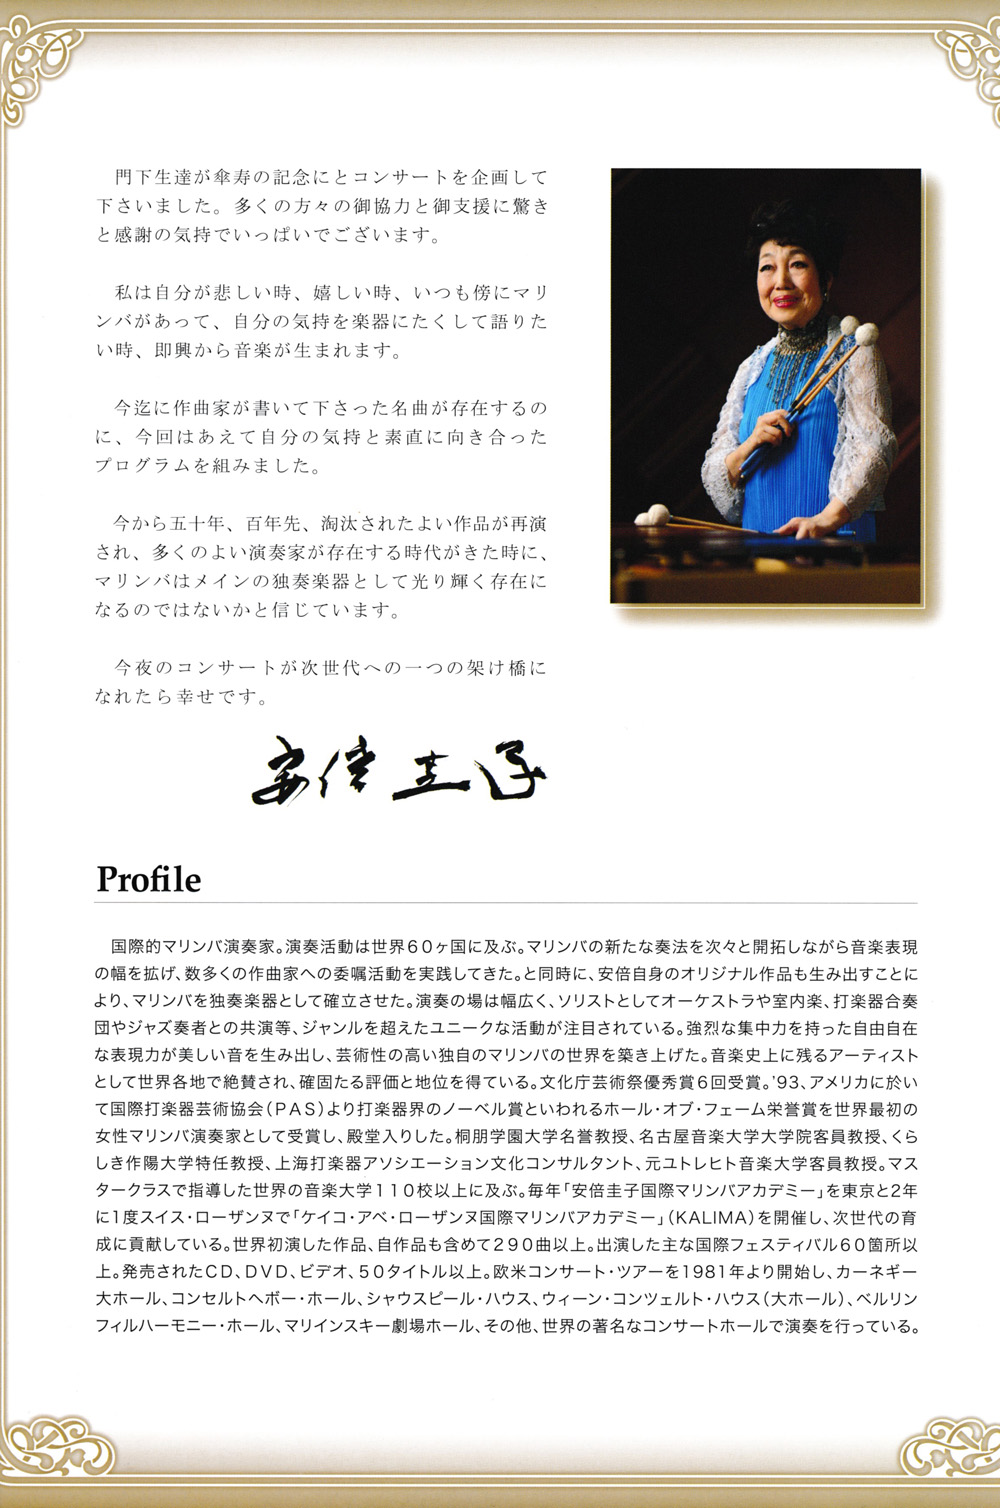 Keiko Abe 80 year oId Celebratory concert